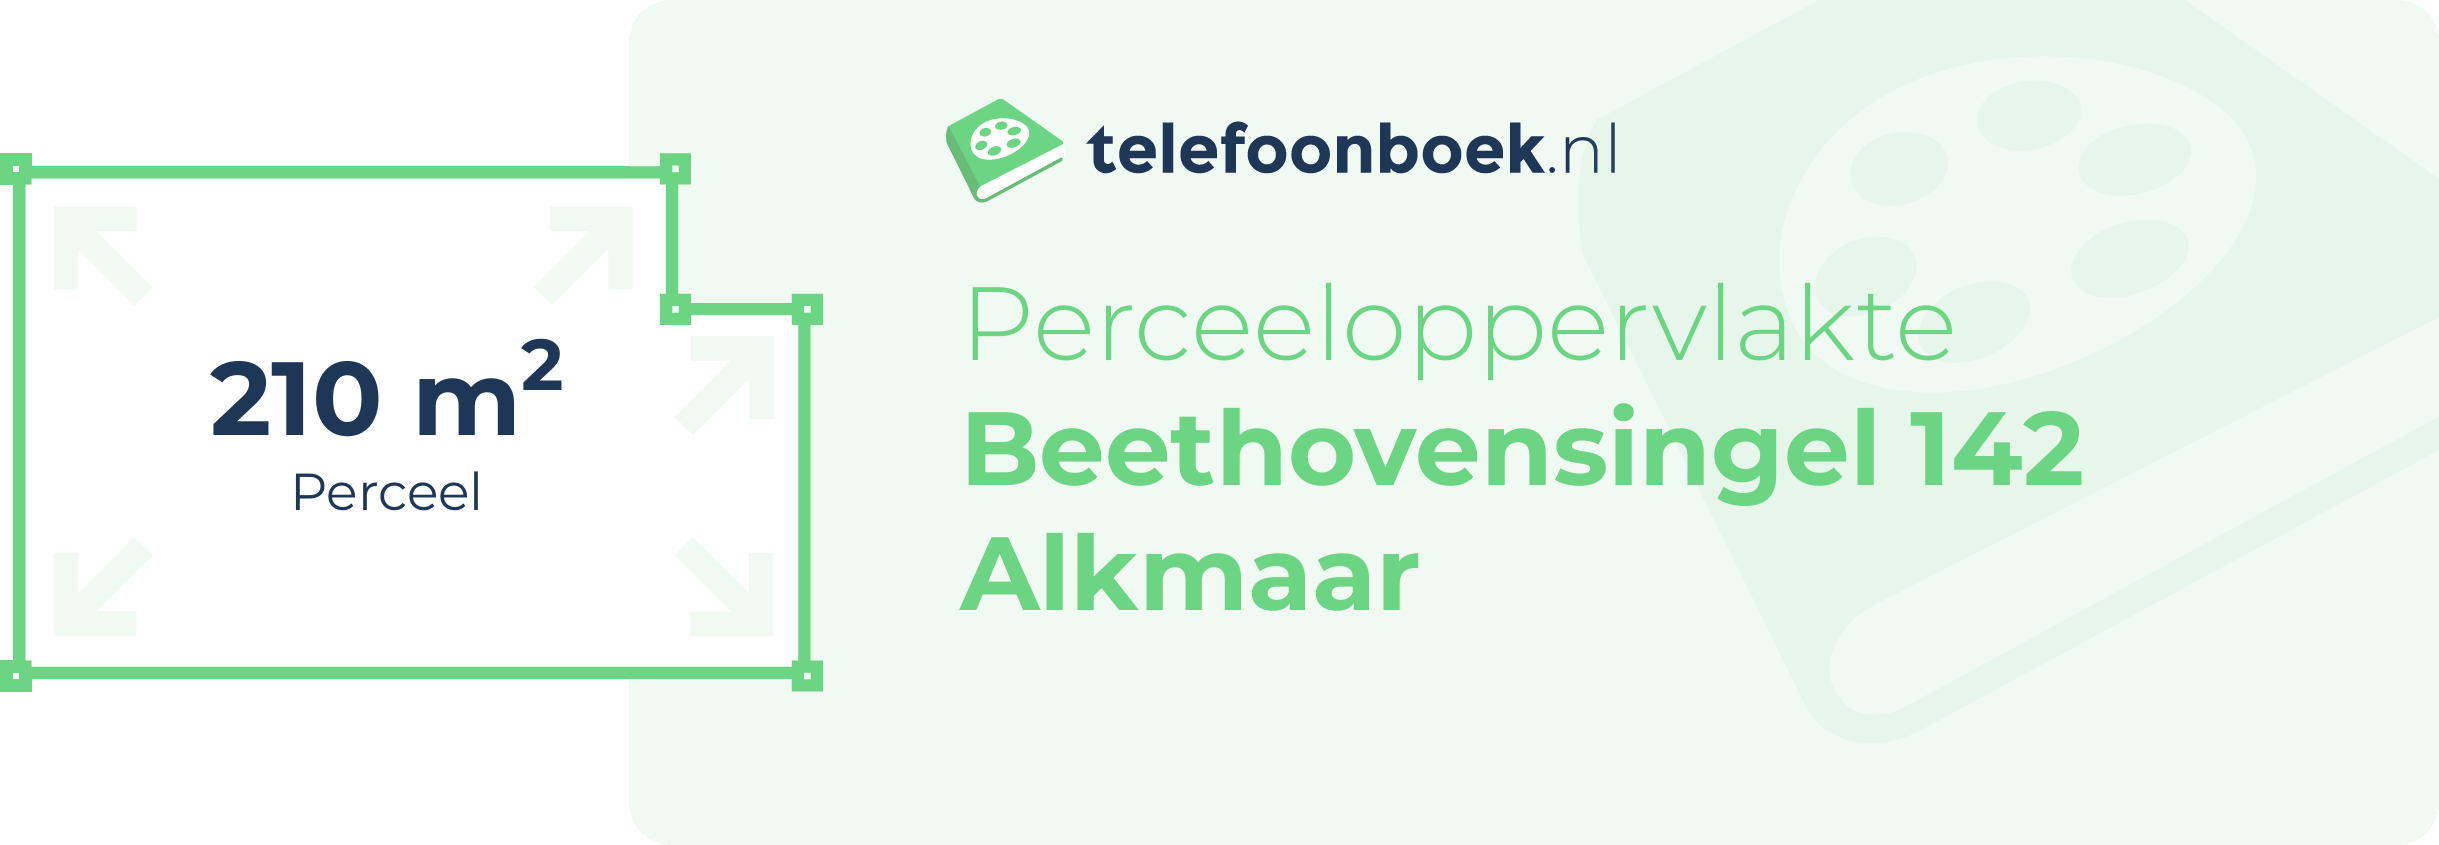 Perceeloppervlakte Beethovensingel 142 Alkmaar